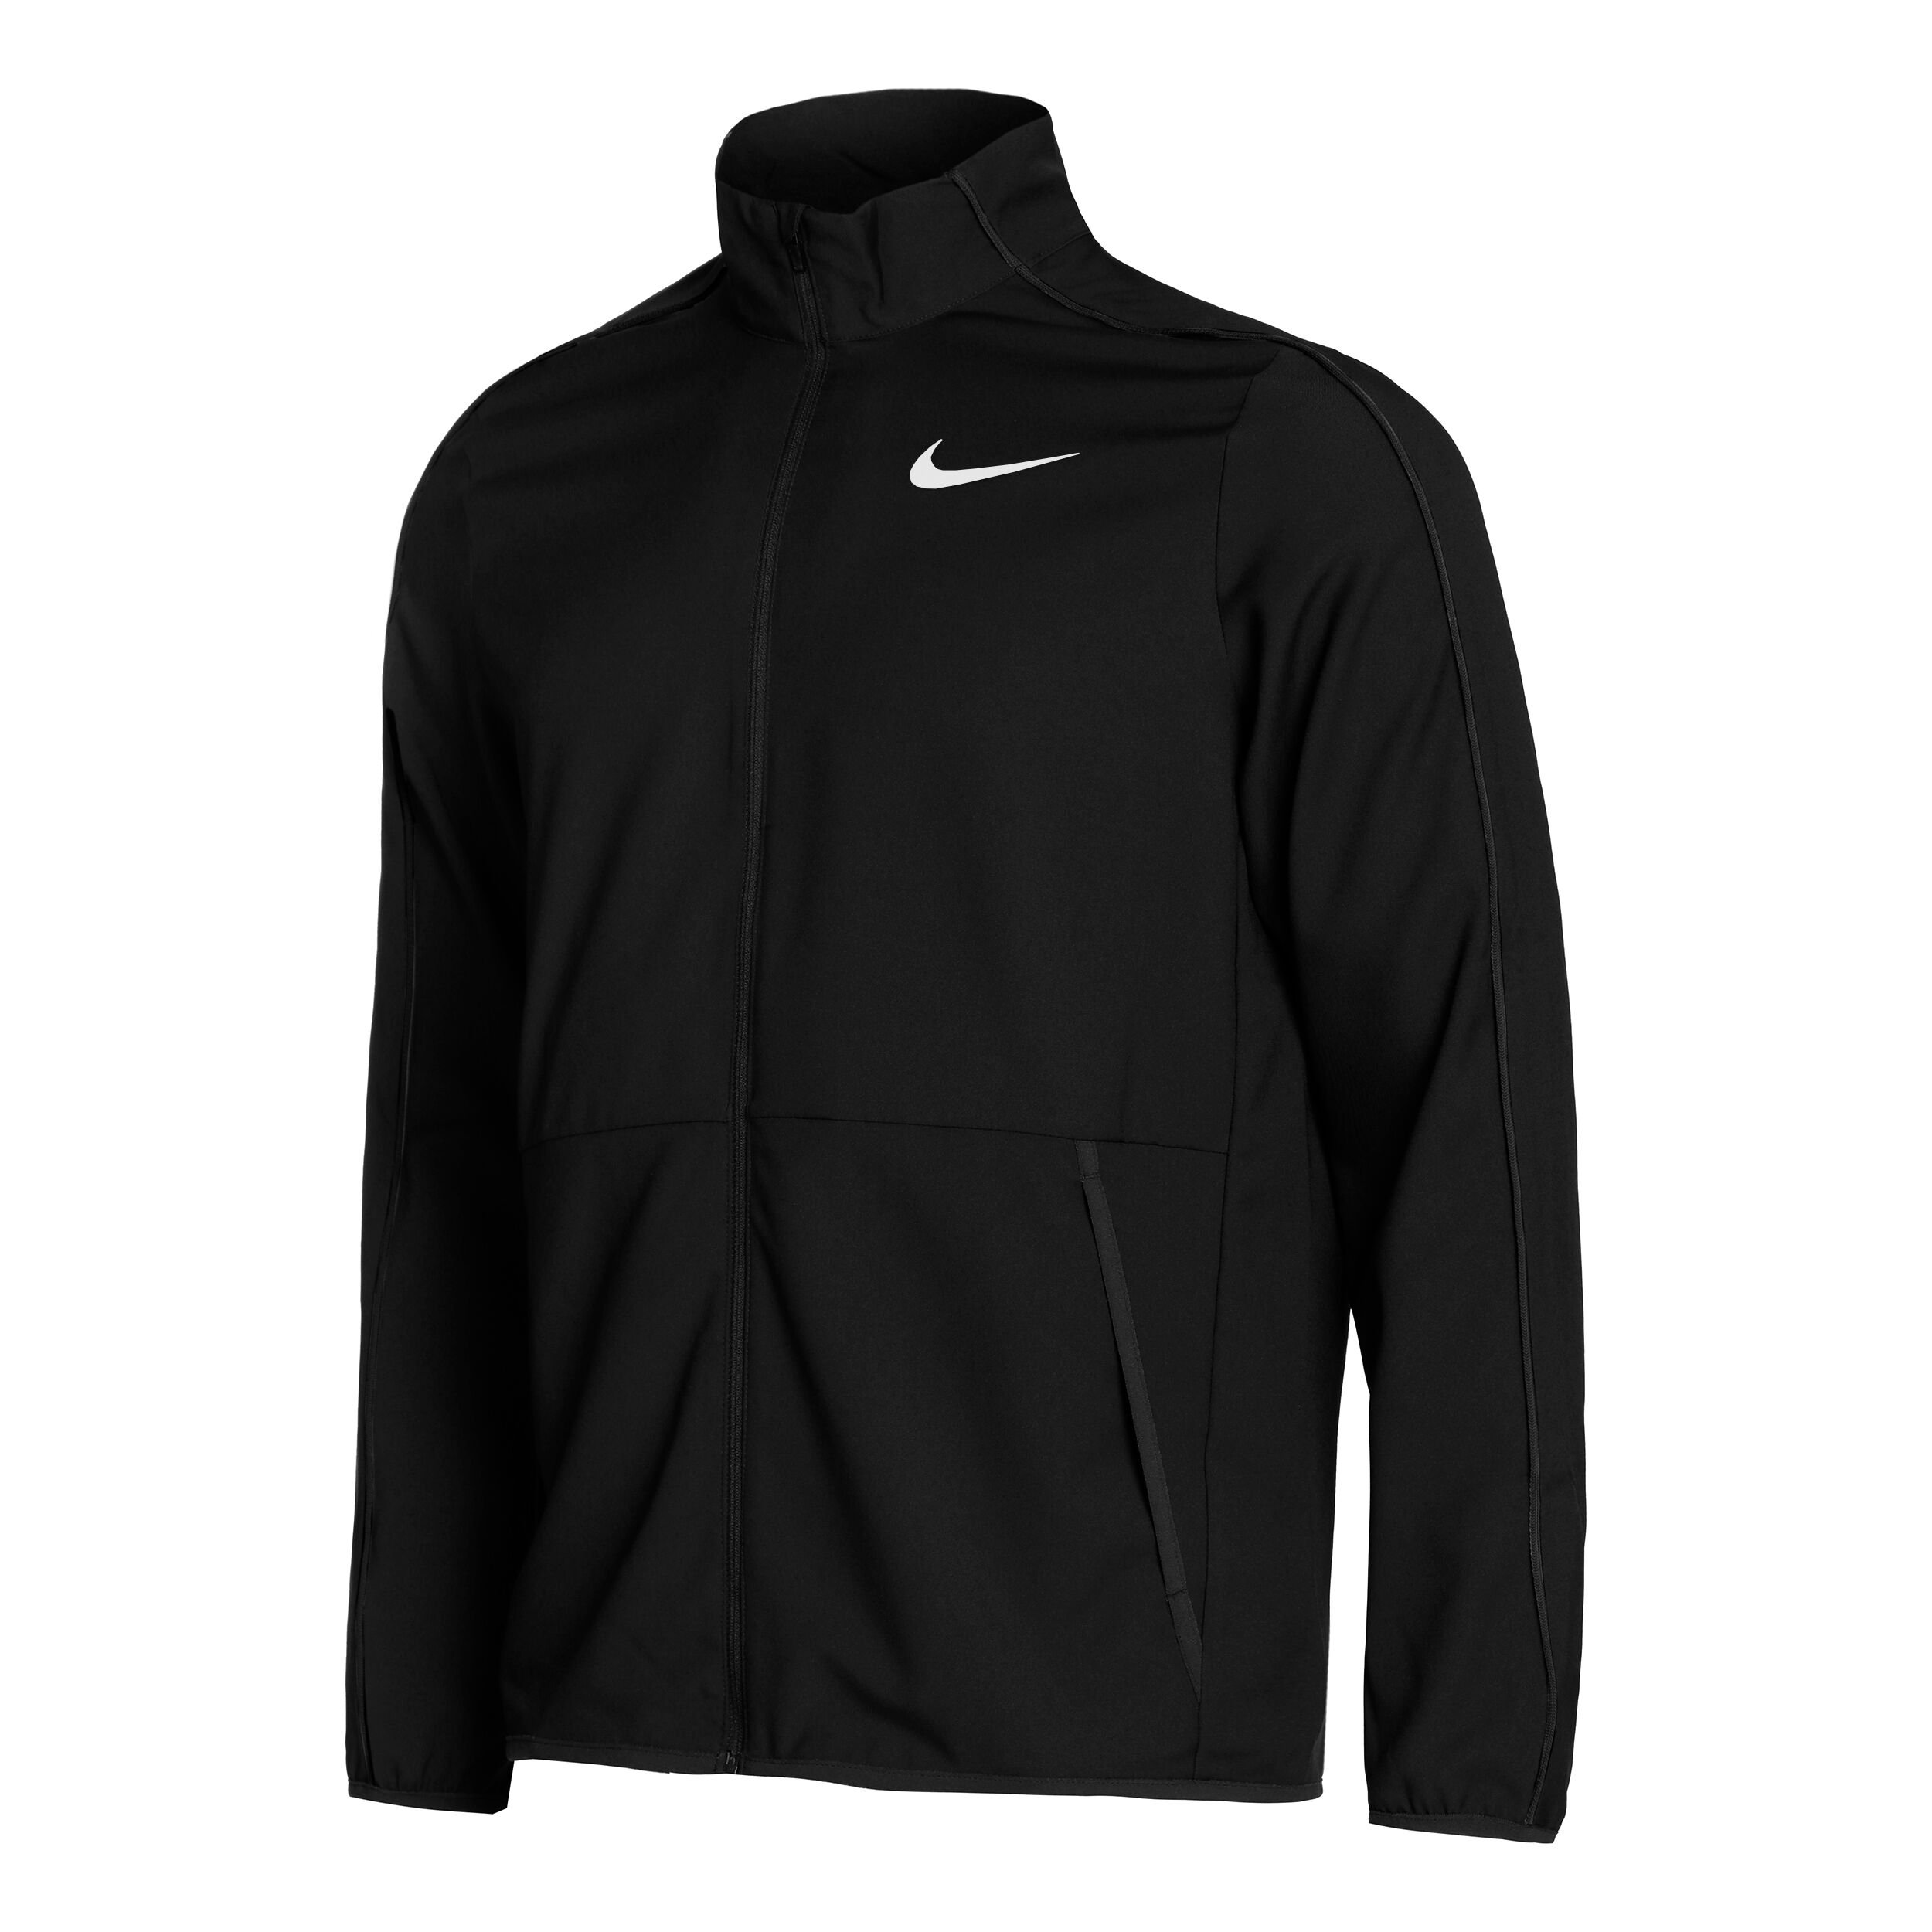 Nike Sportswear Korea Men's Fleece Jacket Black Soccer Asian Fit NWT  DH4919-010 | eBay